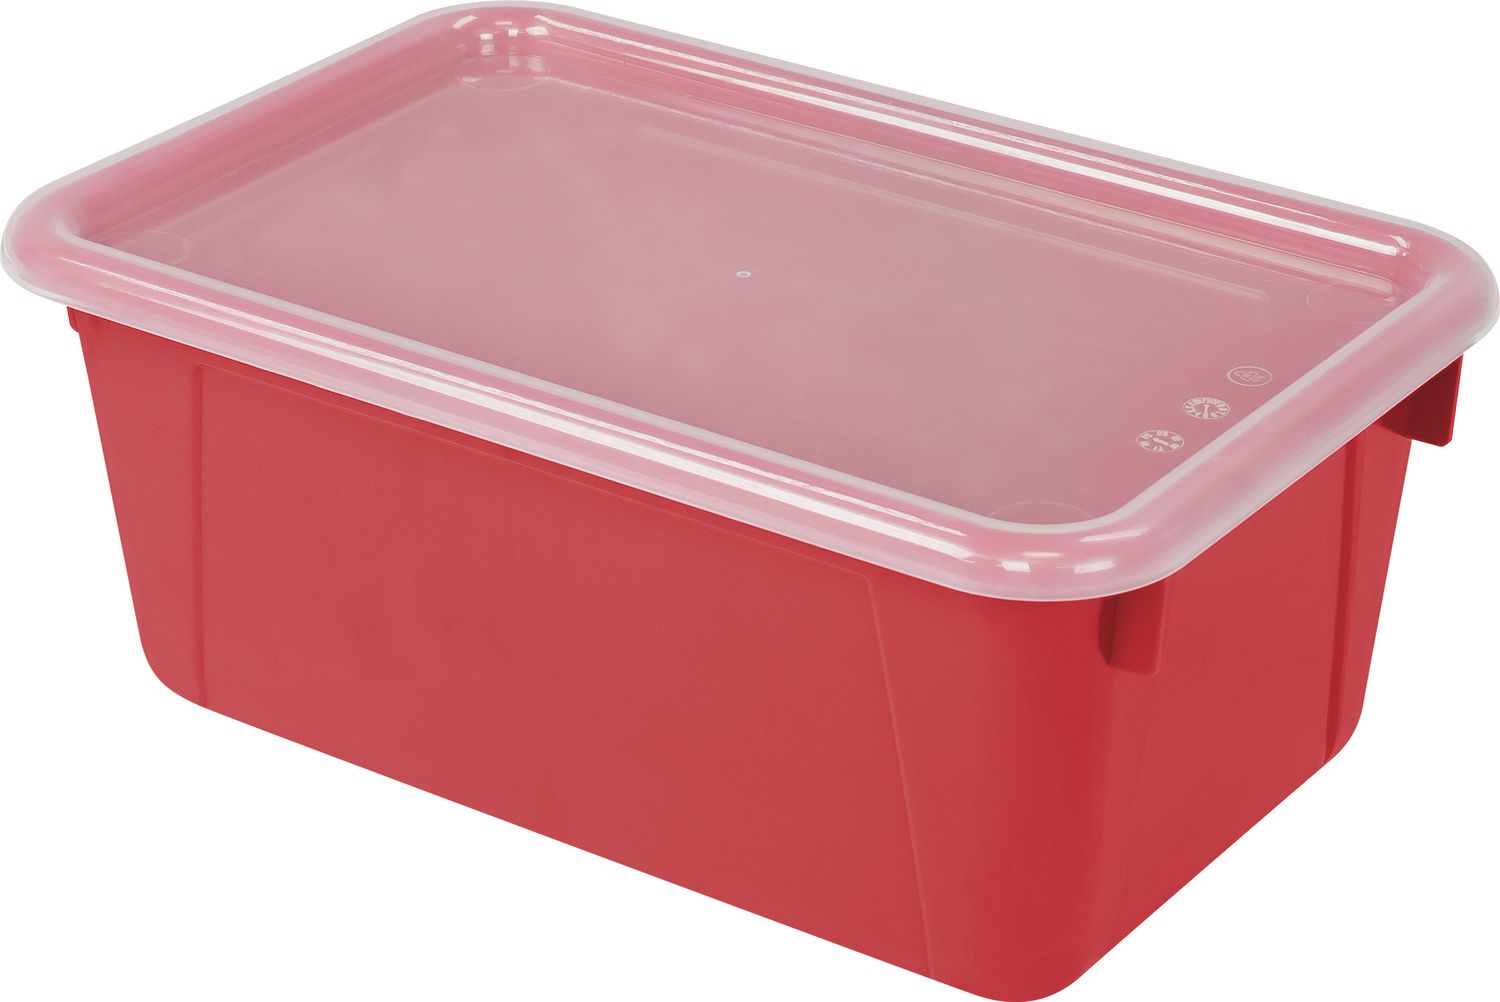 Petite caisse de rangement plastique ouverte 145x385x210mm couleur rouge  (Nesta box 7L)